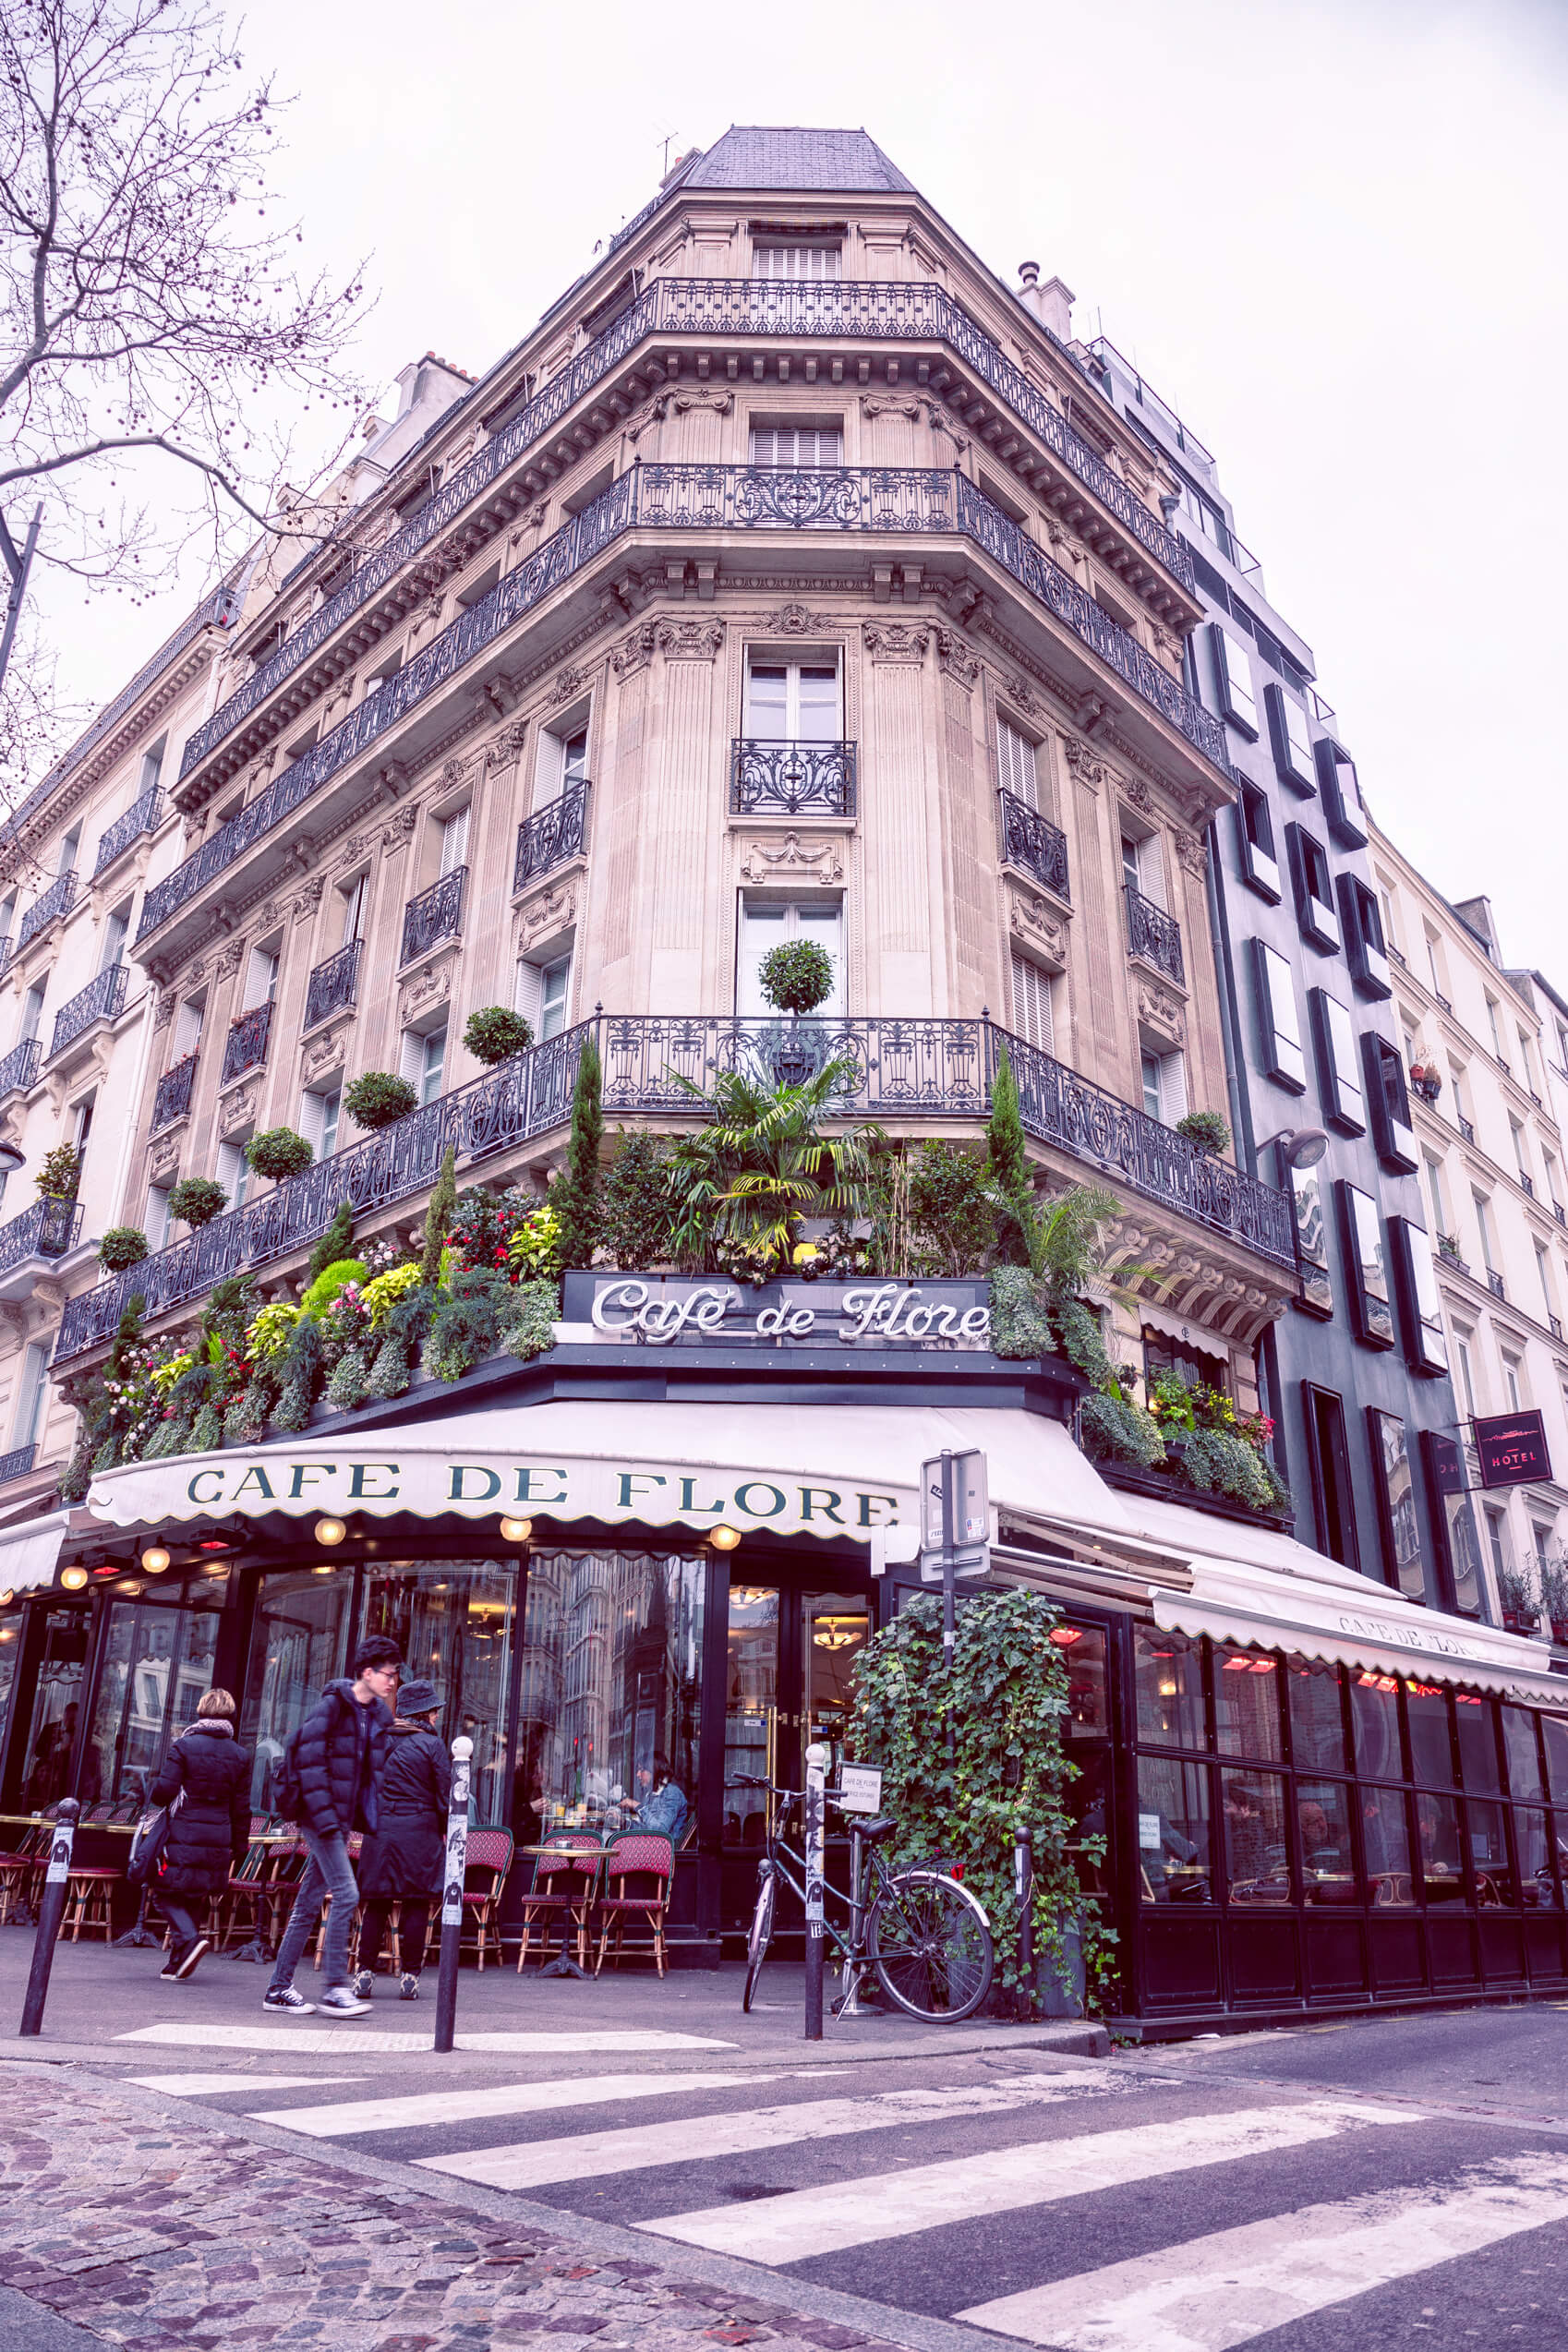 Paris Cafe de flore outside